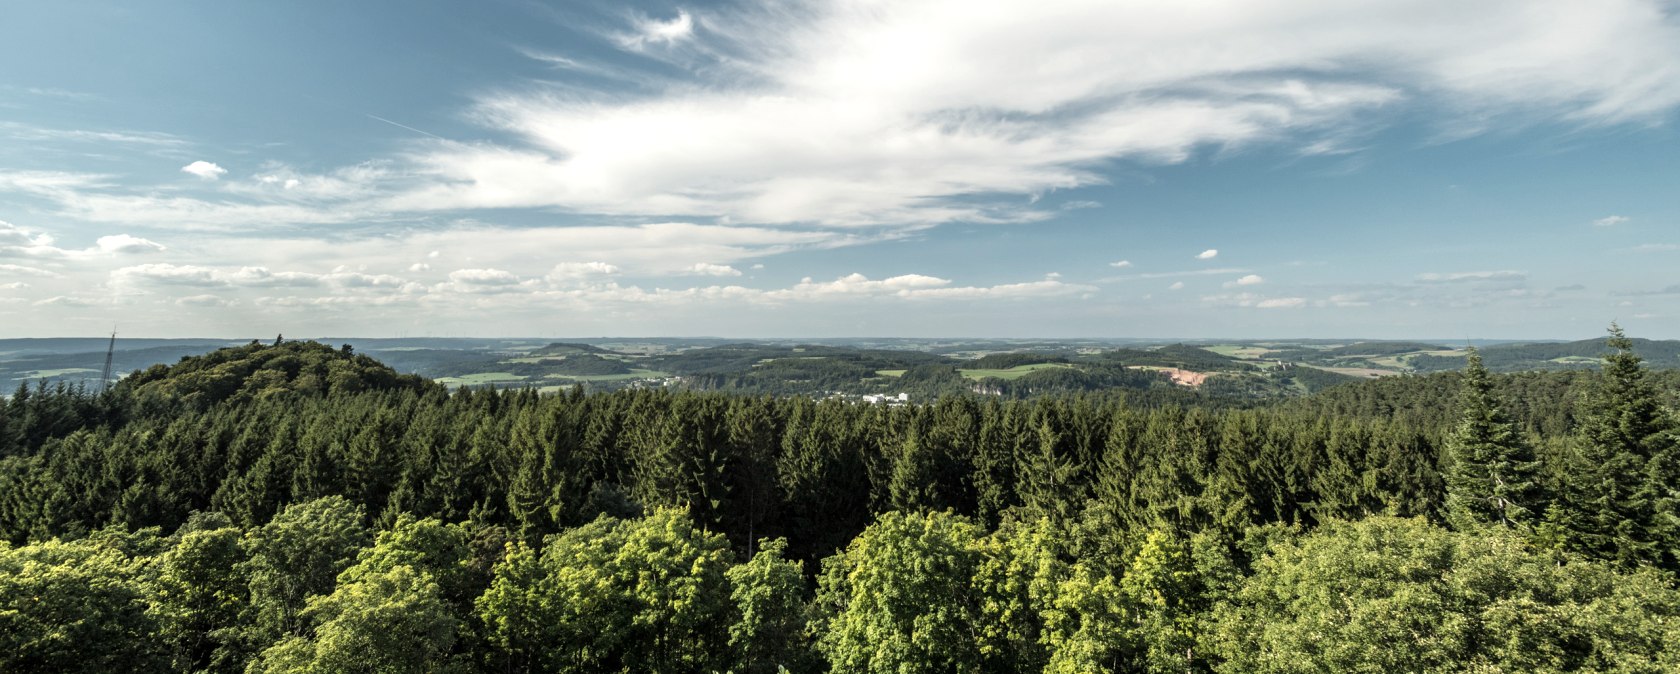 Gerolsteiner Land, © Eifel Tourismus GmbH, Dominik Ketz